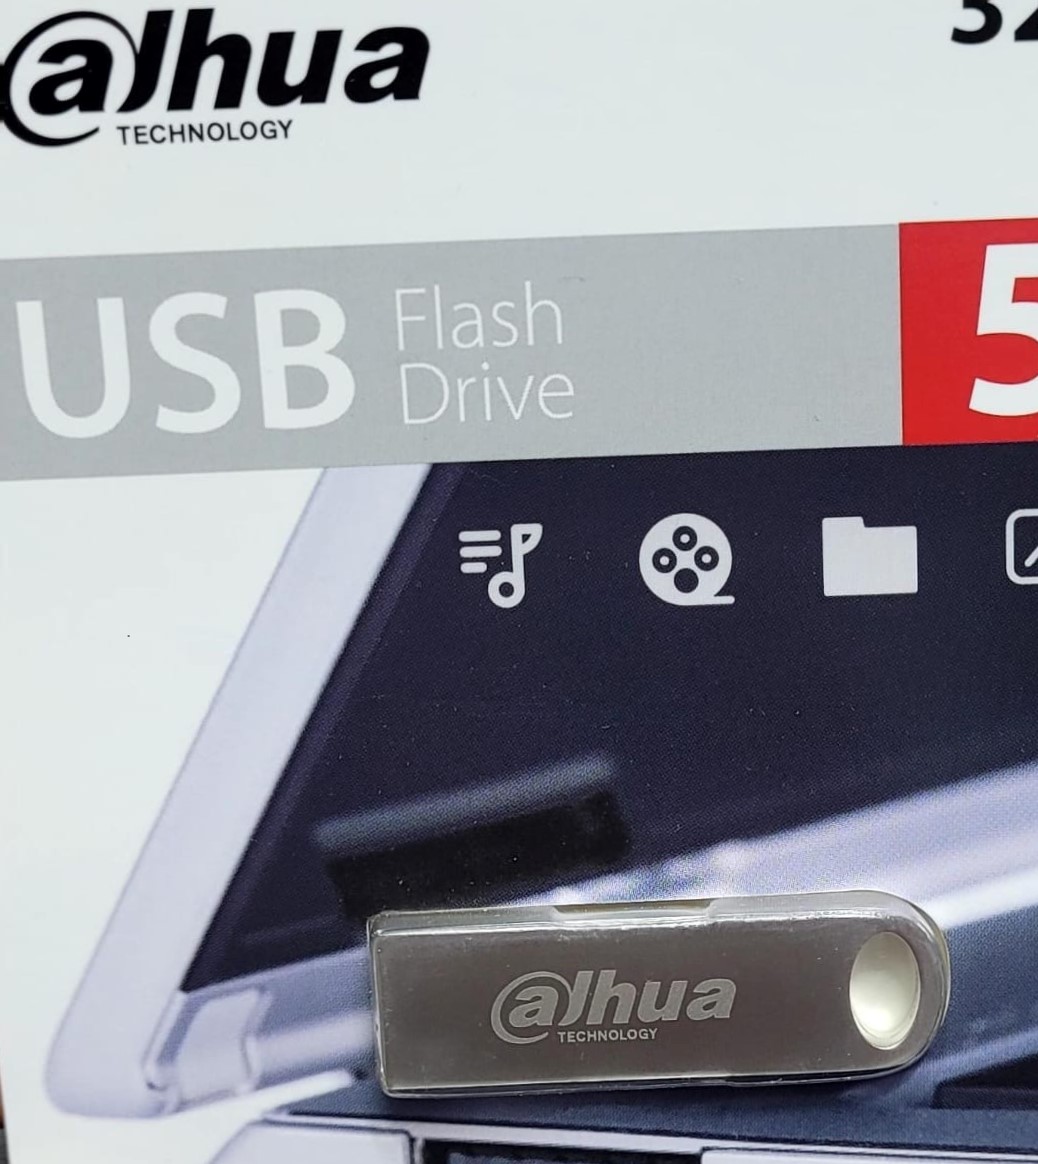 USB DAHUA 32GB FLASH DRIVE 3.2